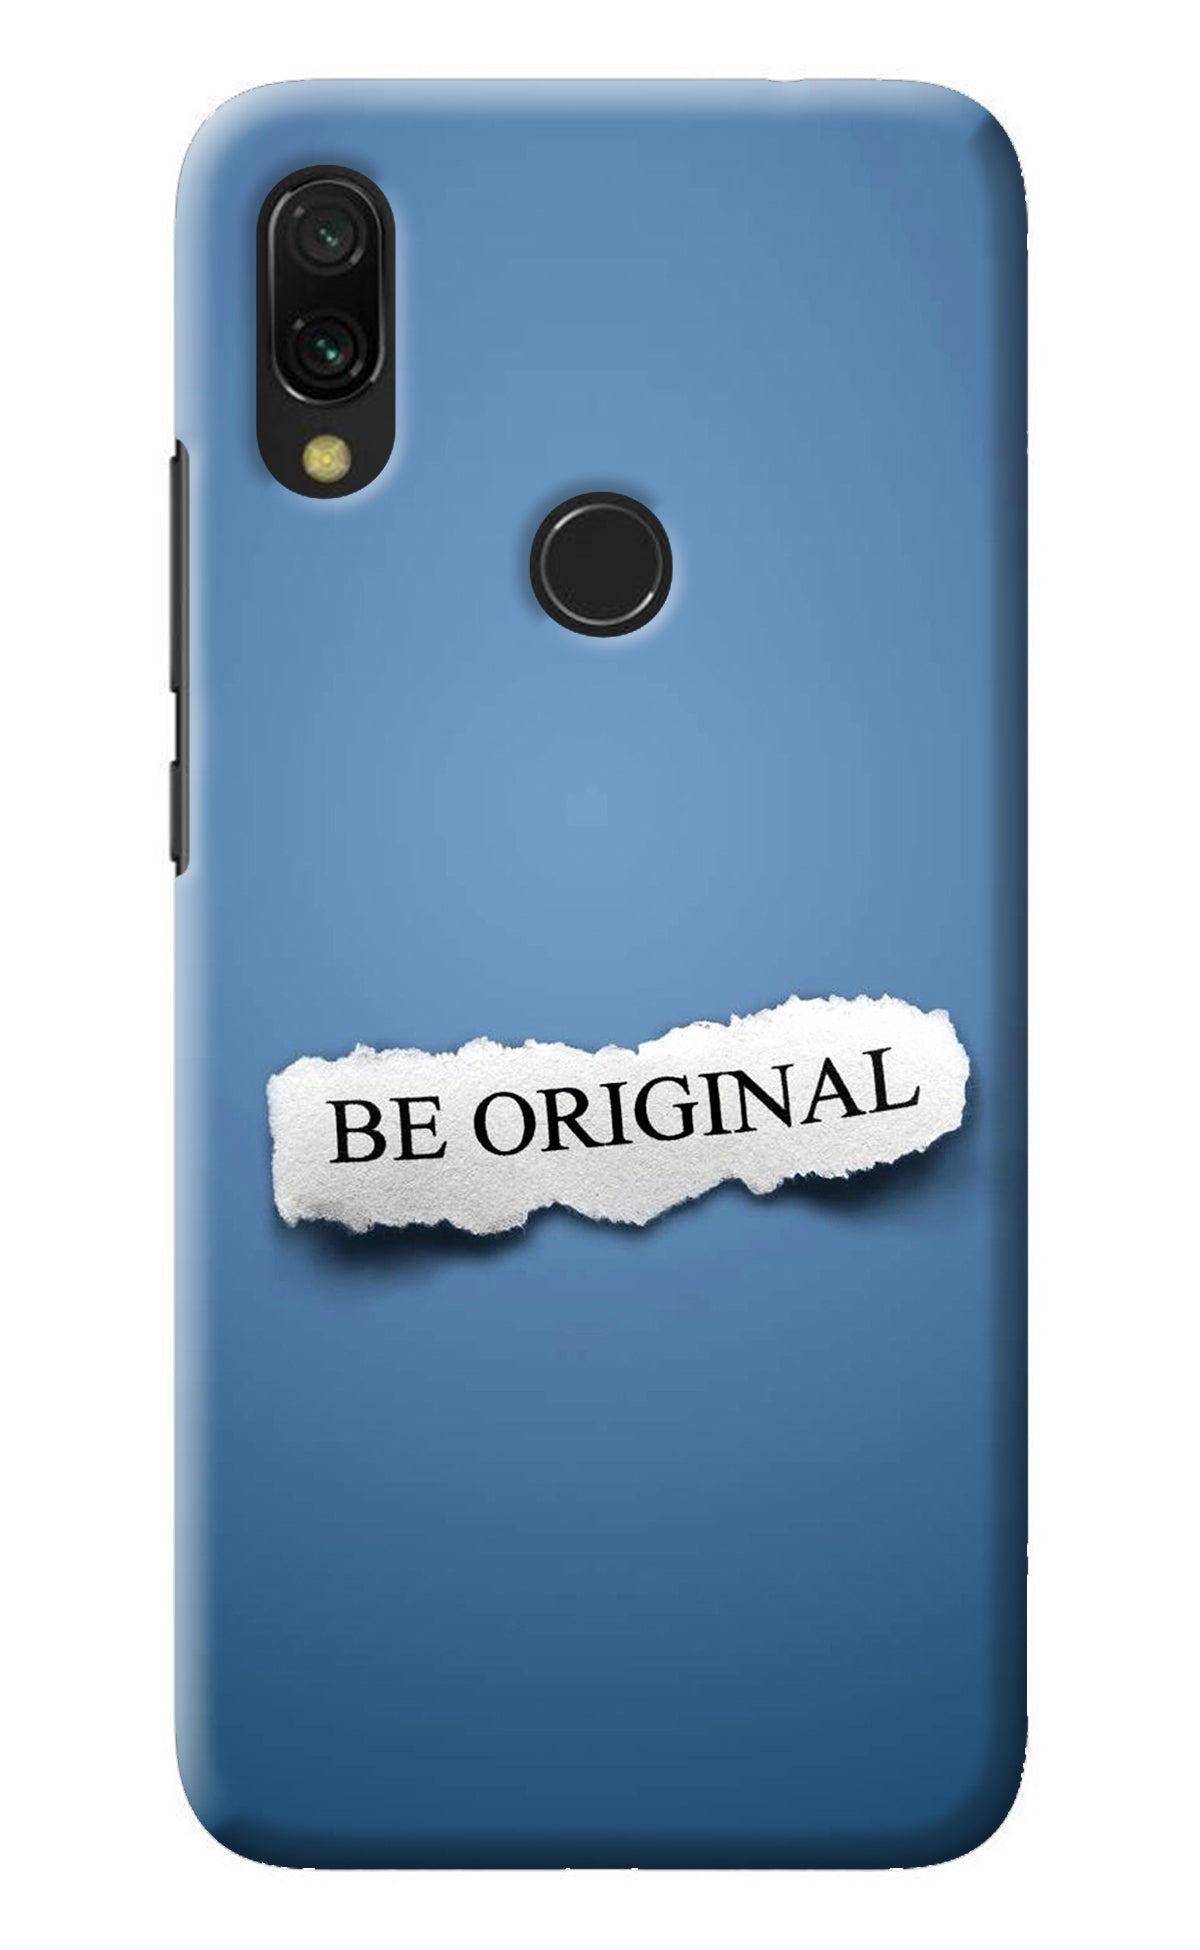 Be Original Redmi 7 Back Cover